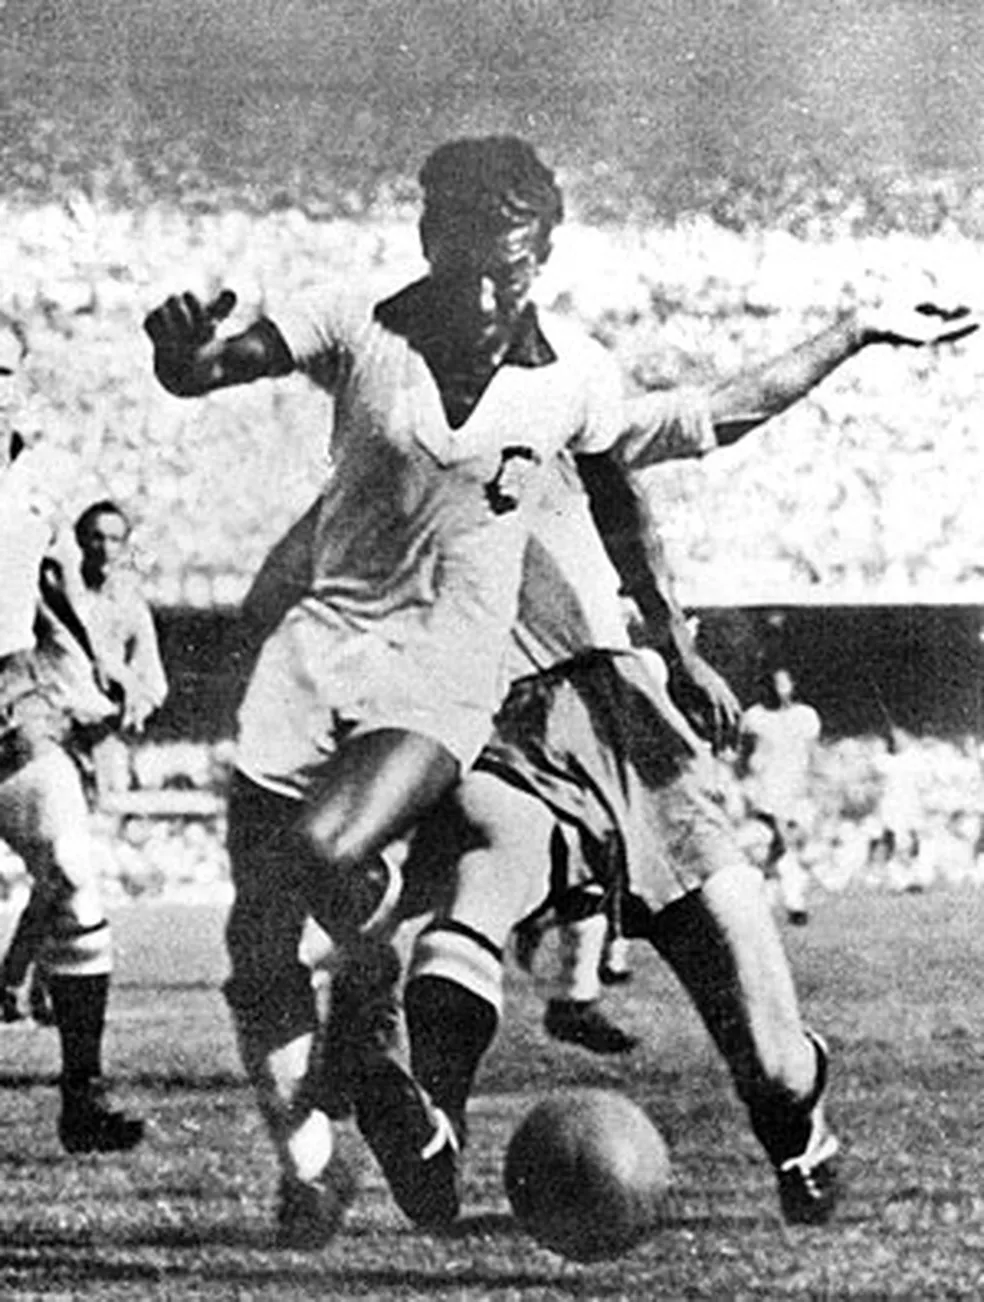 Copa do Mundo 1950 - Zizinho